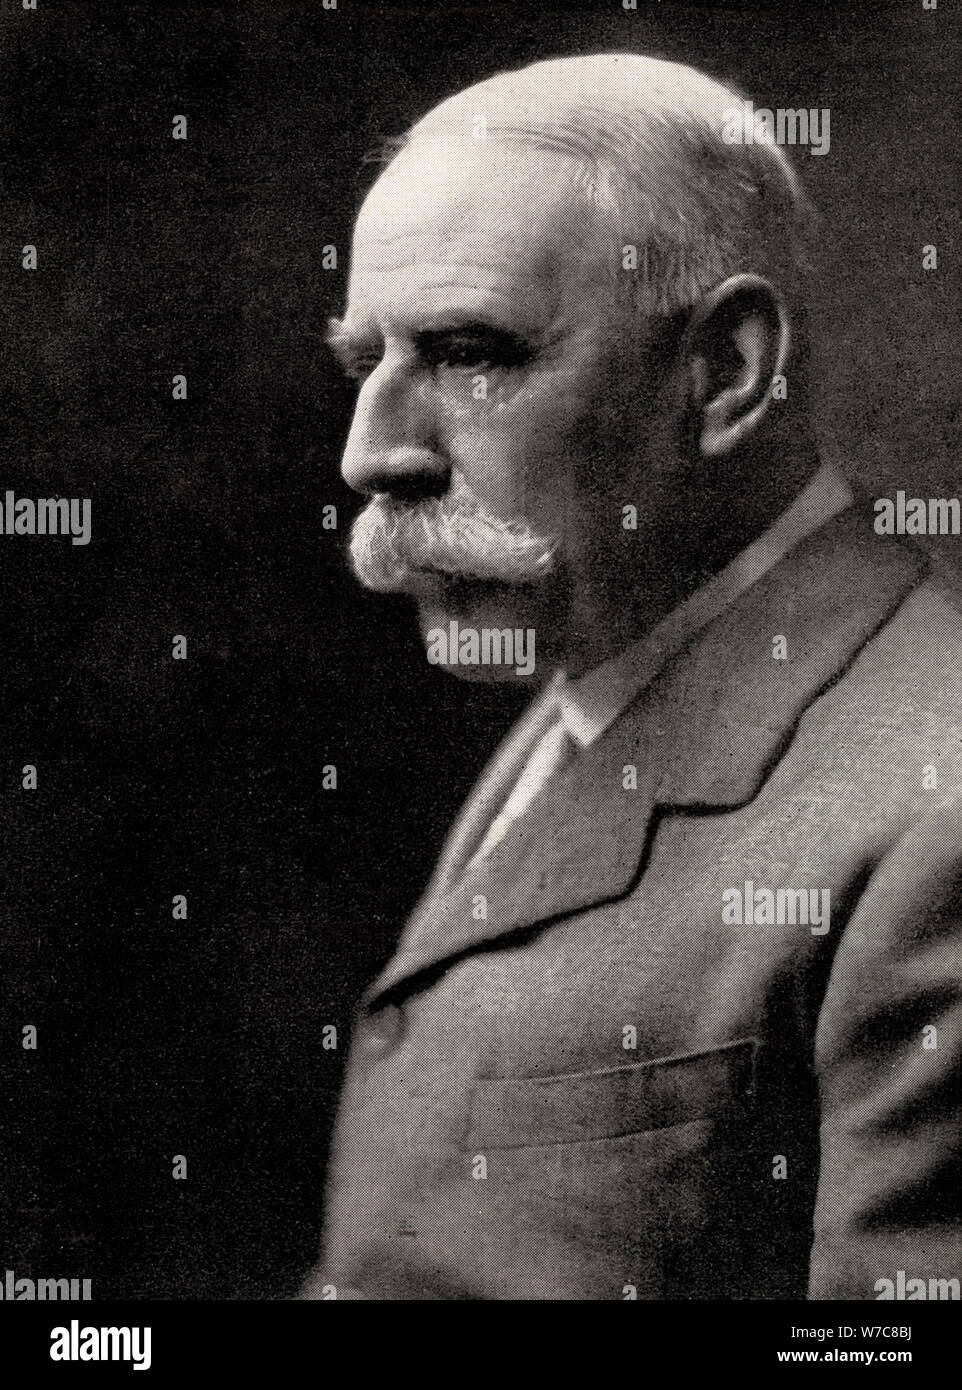 Sir Edward Elgar, (1857-1934), compositeur anglais, au début du xxe siècle. Artiste : Inconnu Banque D'Images